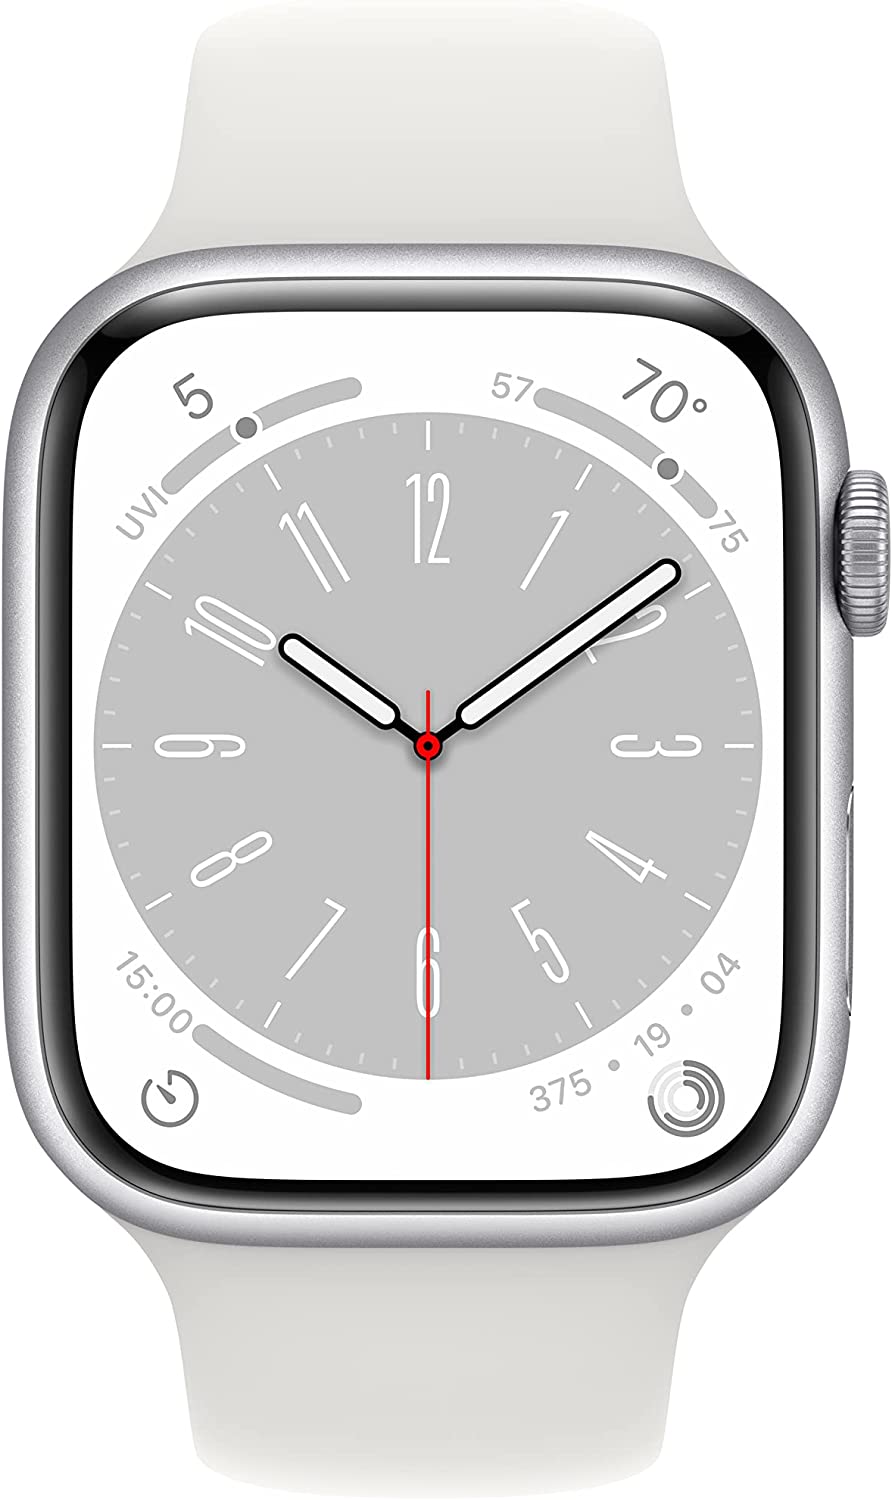 Smartwatch Apple Watch Serie 8 da Comet: in offerta sottocosto al prezzo di 489 euro